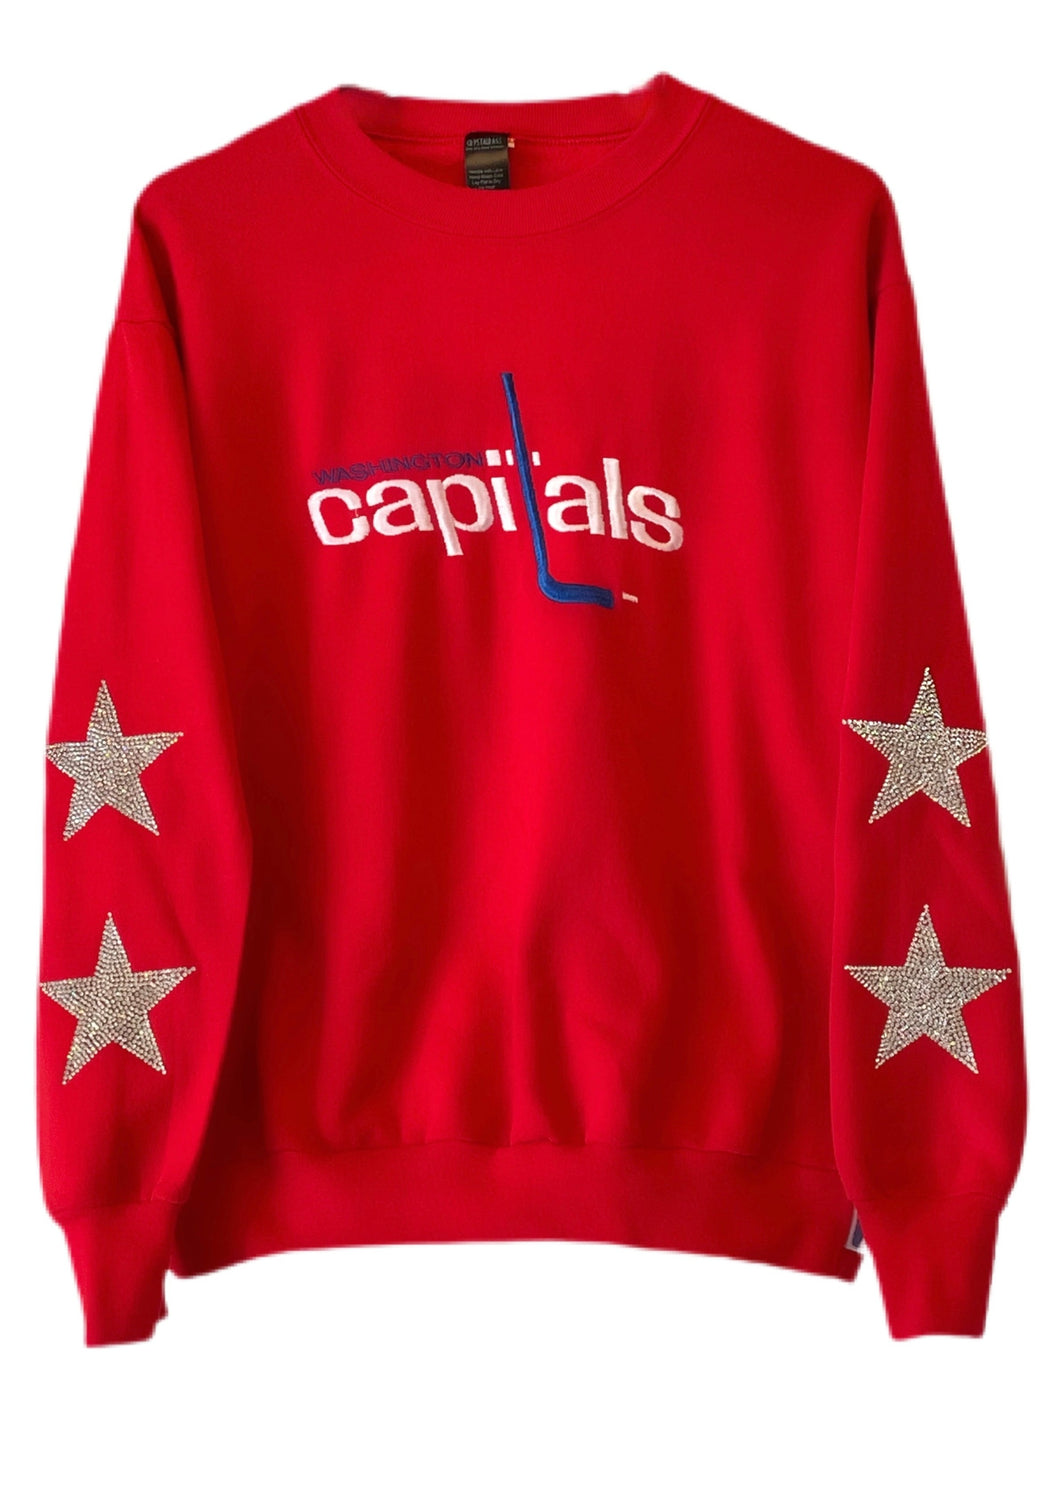 Capitals Vintage Crew Sweatshirt